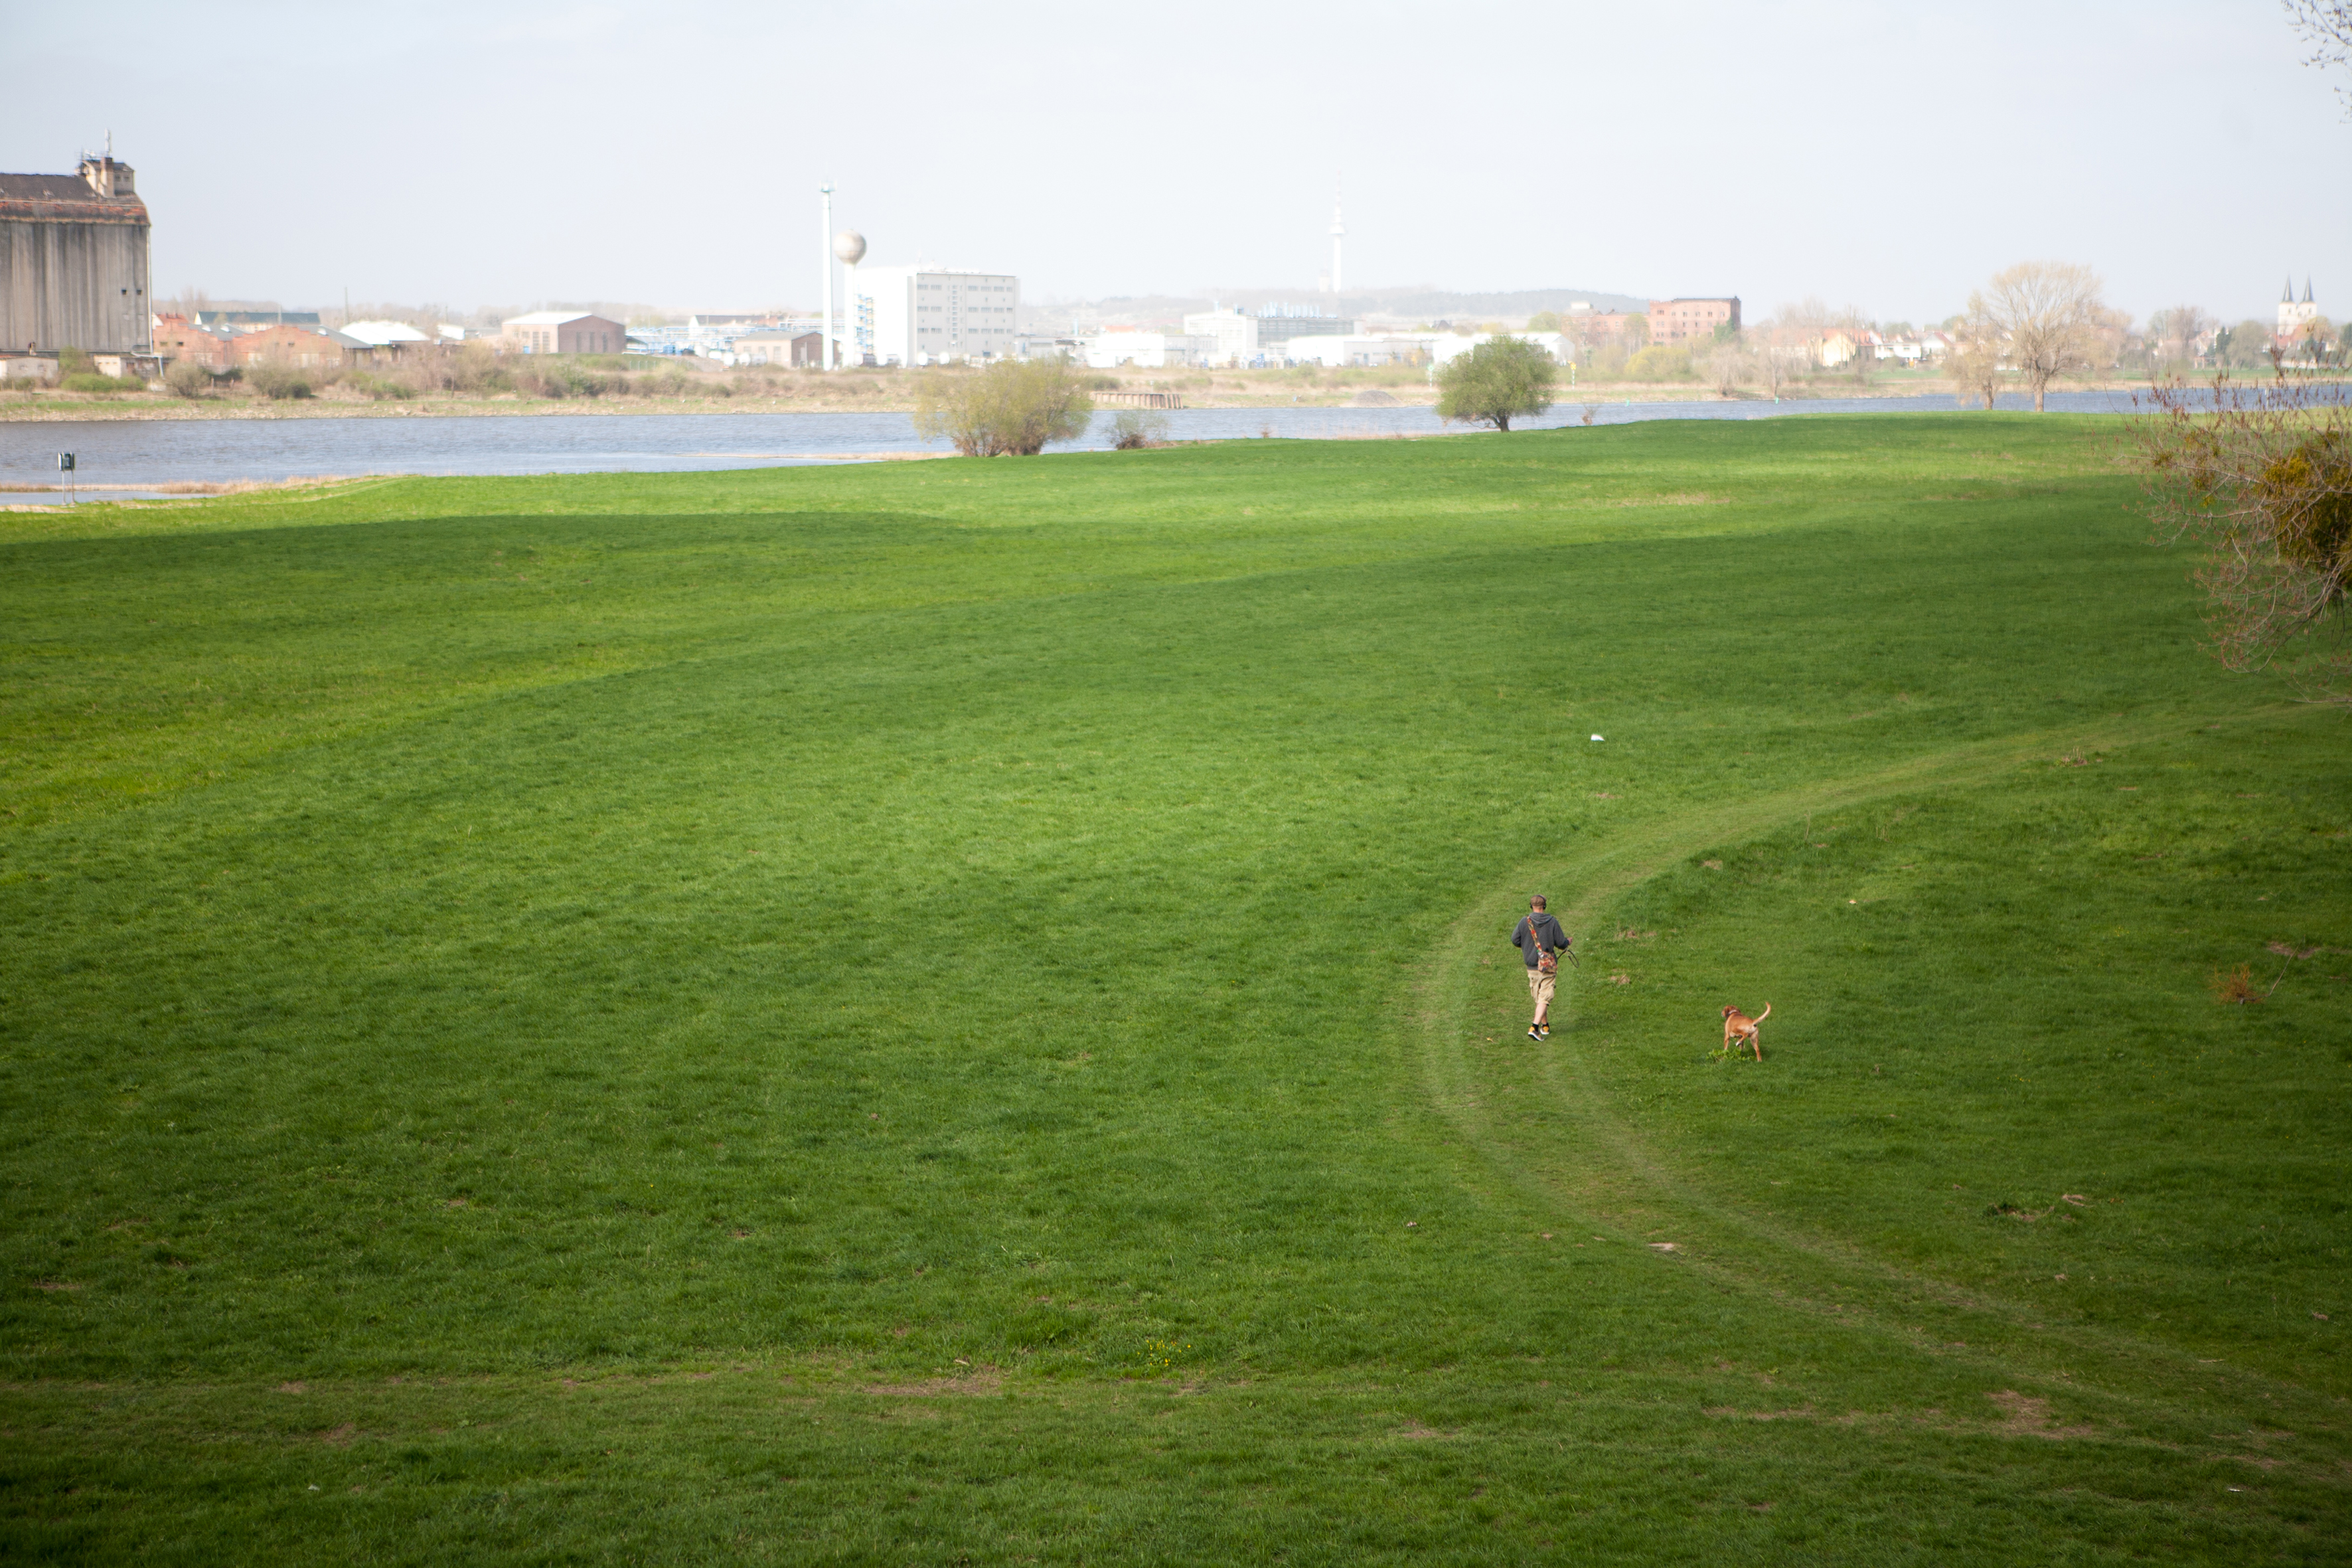 Das Foto zeigt eine Stadtkulisse im Hintergrund, im Vordergrund eine grüne Wiese auf der ein einzelner Mensch spazierengeht. Der Himmel ist blaugrau.